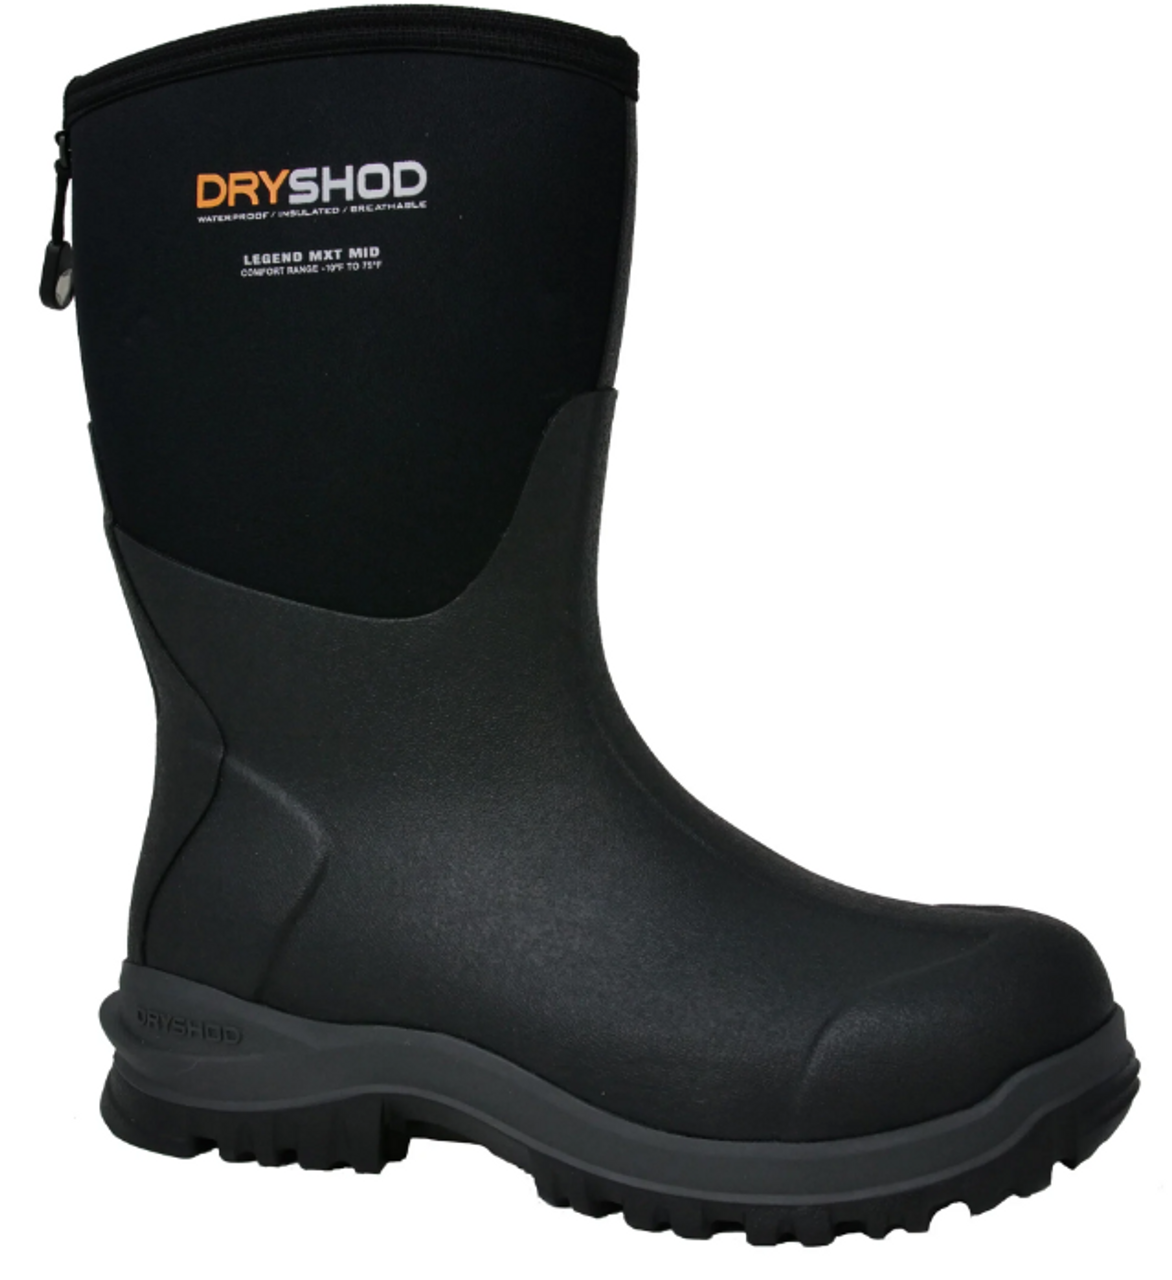 Dryshod Men's Legend MXT Mid Work Boots, Black